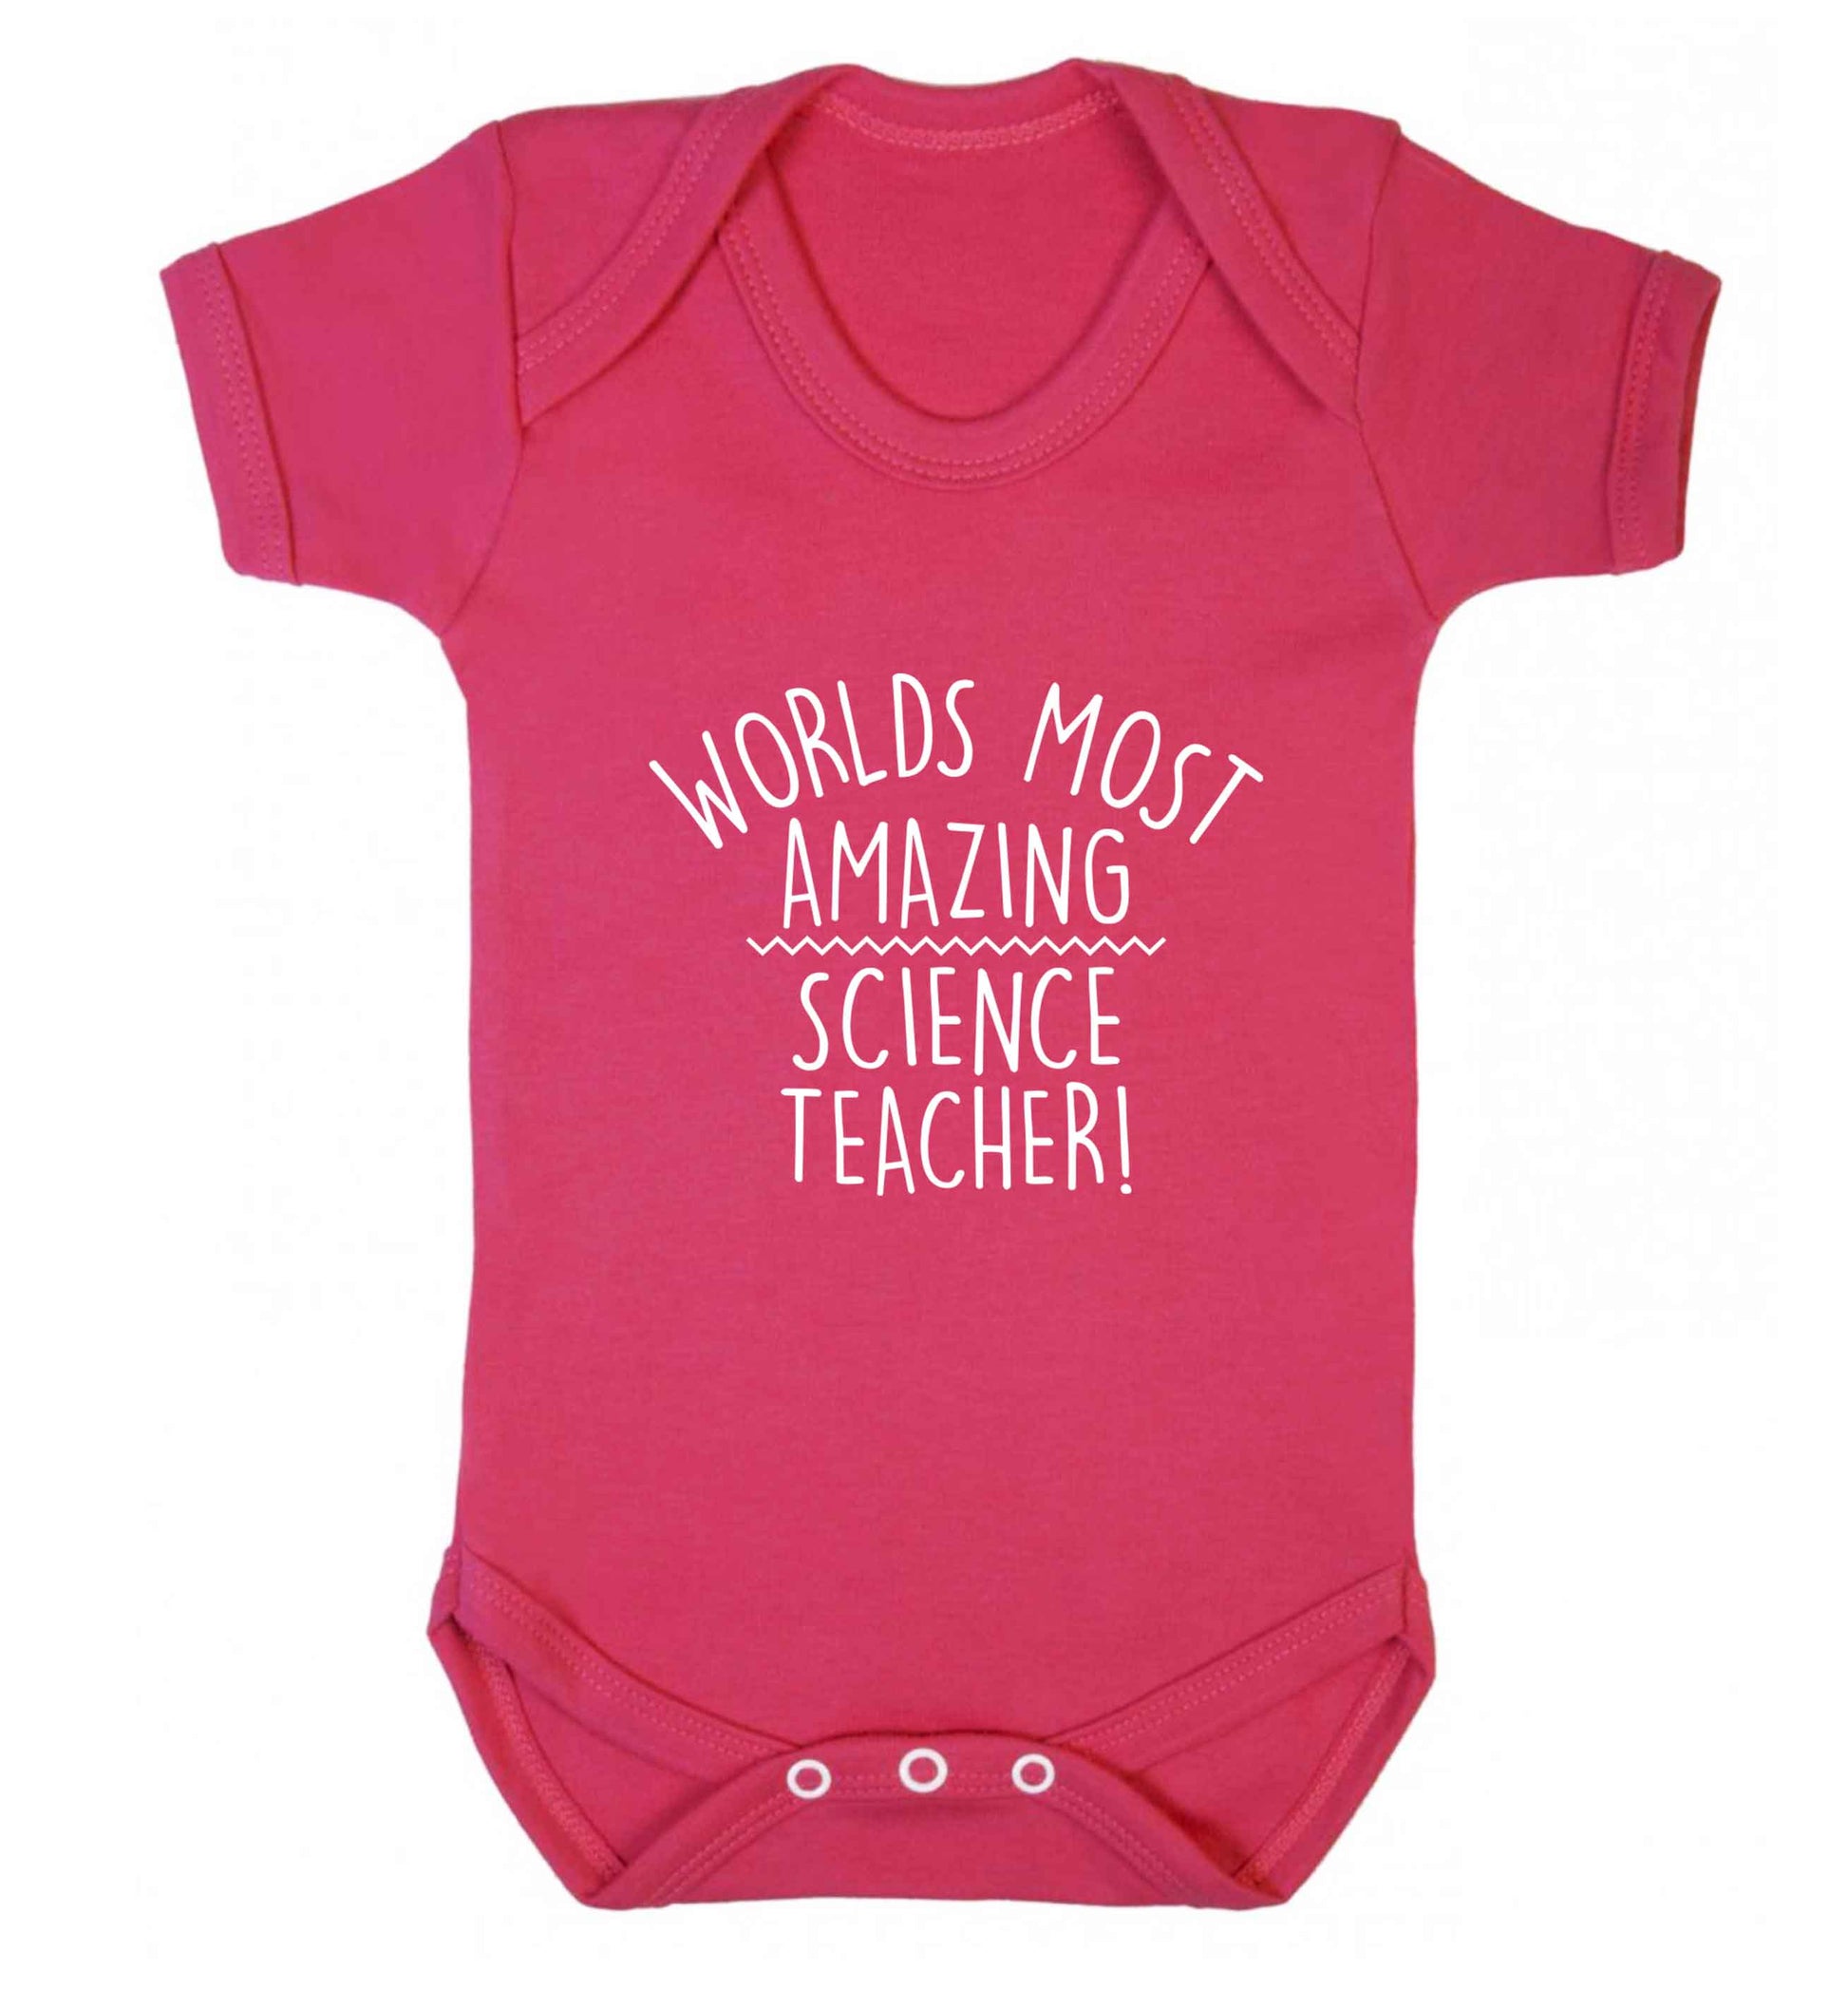 Worlds most amazing science teacher baby vest dark pink 18-24 months